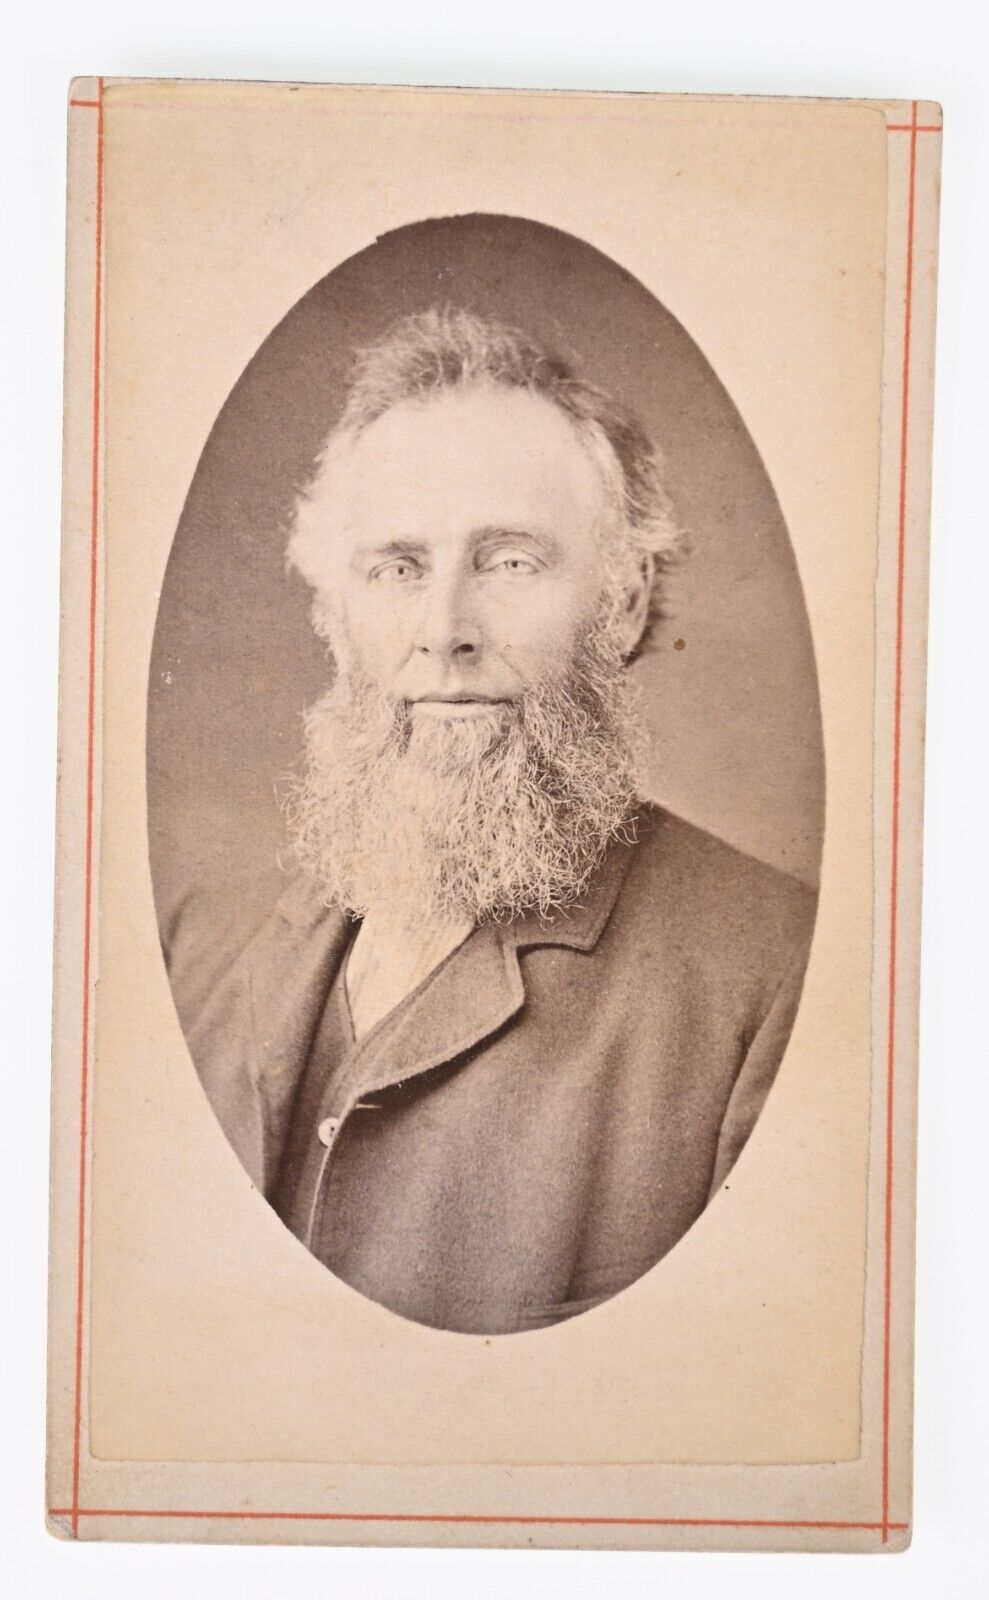 ANTIQUE CDV CIRCA 1870s JOHN STRICKMAKER OLD BEARDED MAN CANAL DOVER OHIO